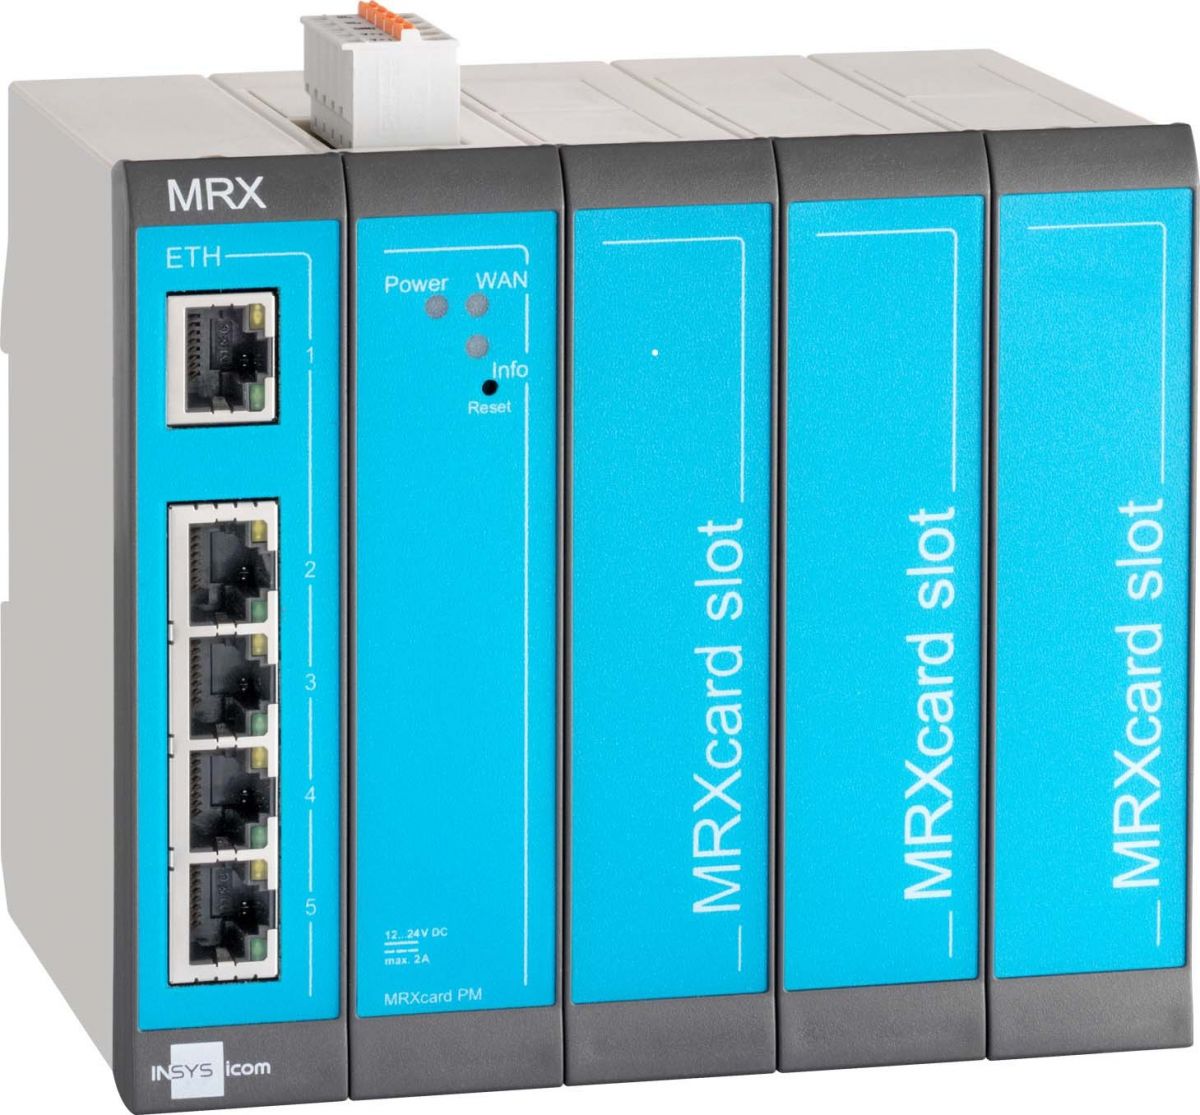 Industrierouter-LAN MRX5 LAN 1.0